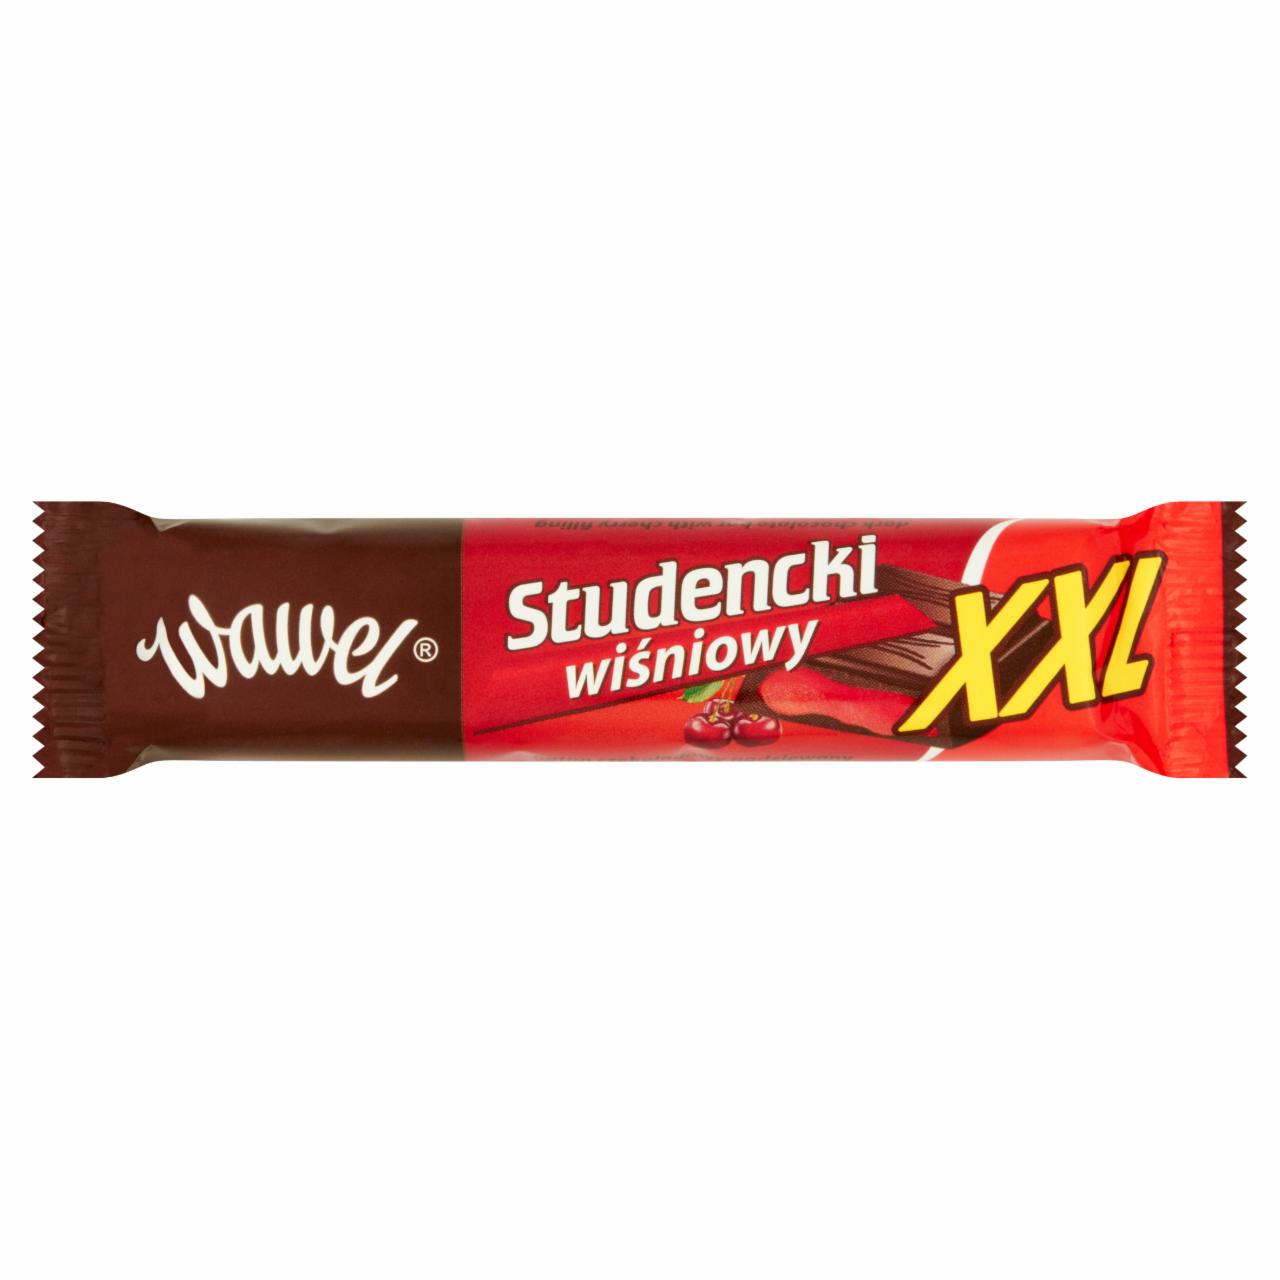 Zdjęcia - Wawel Studencki wiśniowy XXL Baton czekoladowy nadziewany 48 g